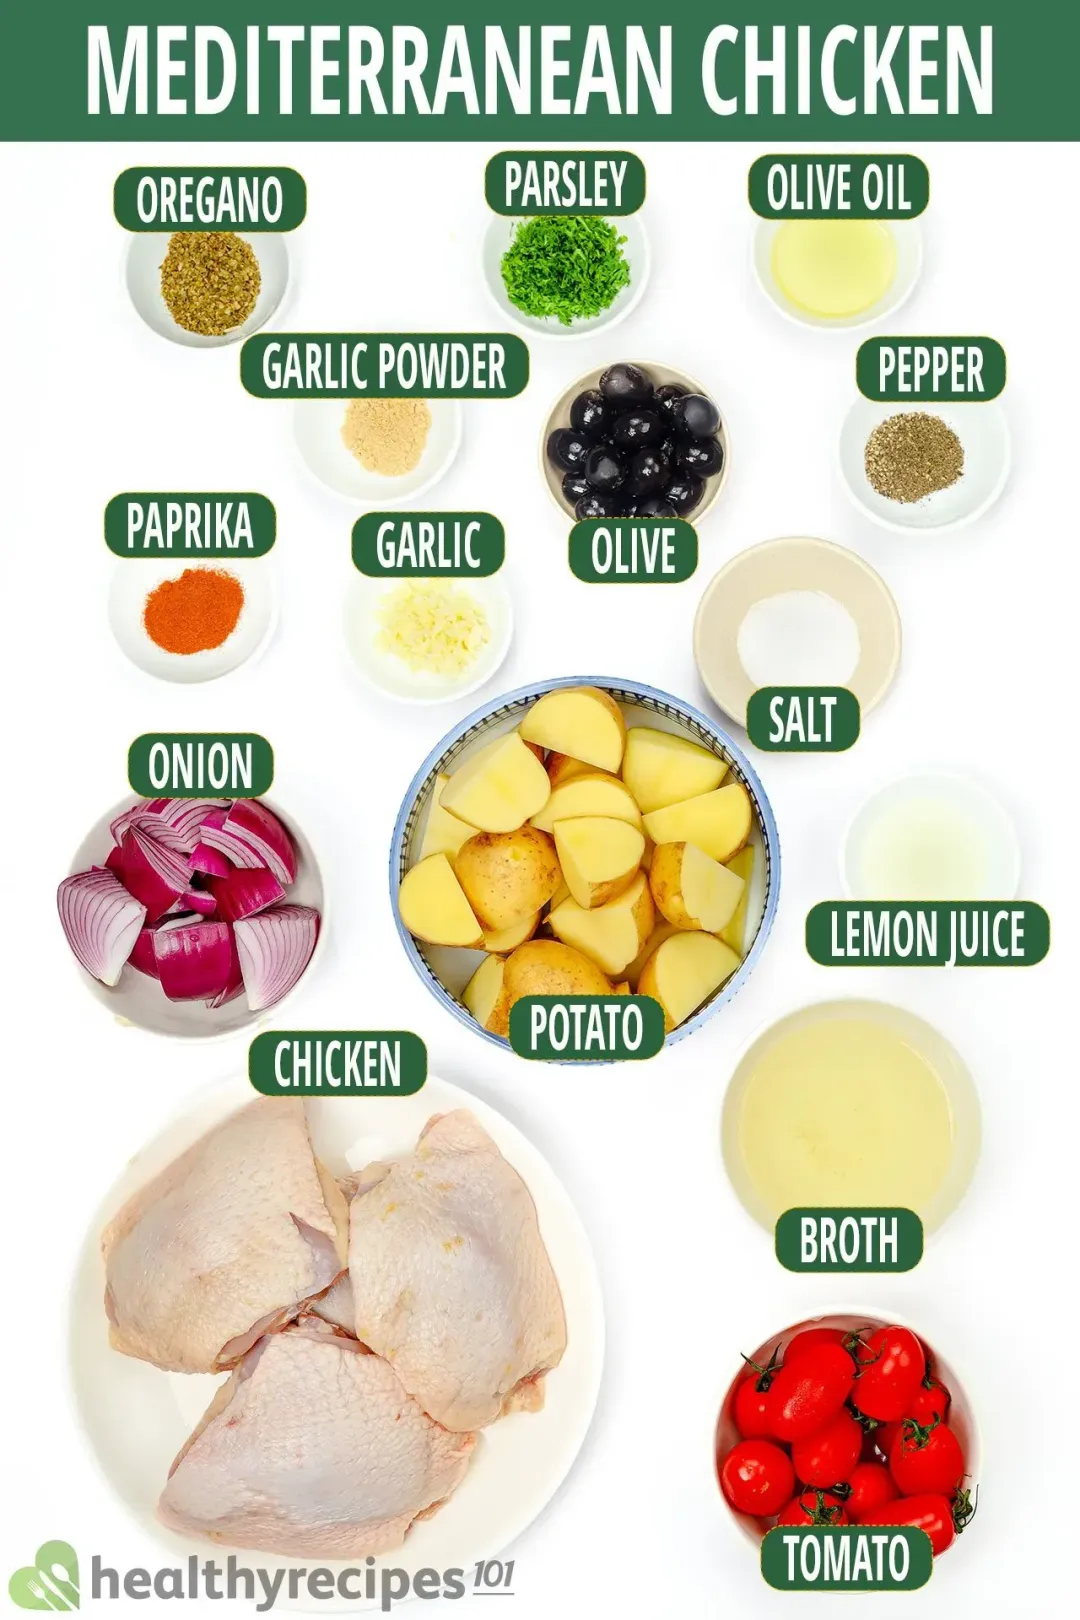 Ingredients for Mediterranean Chicken